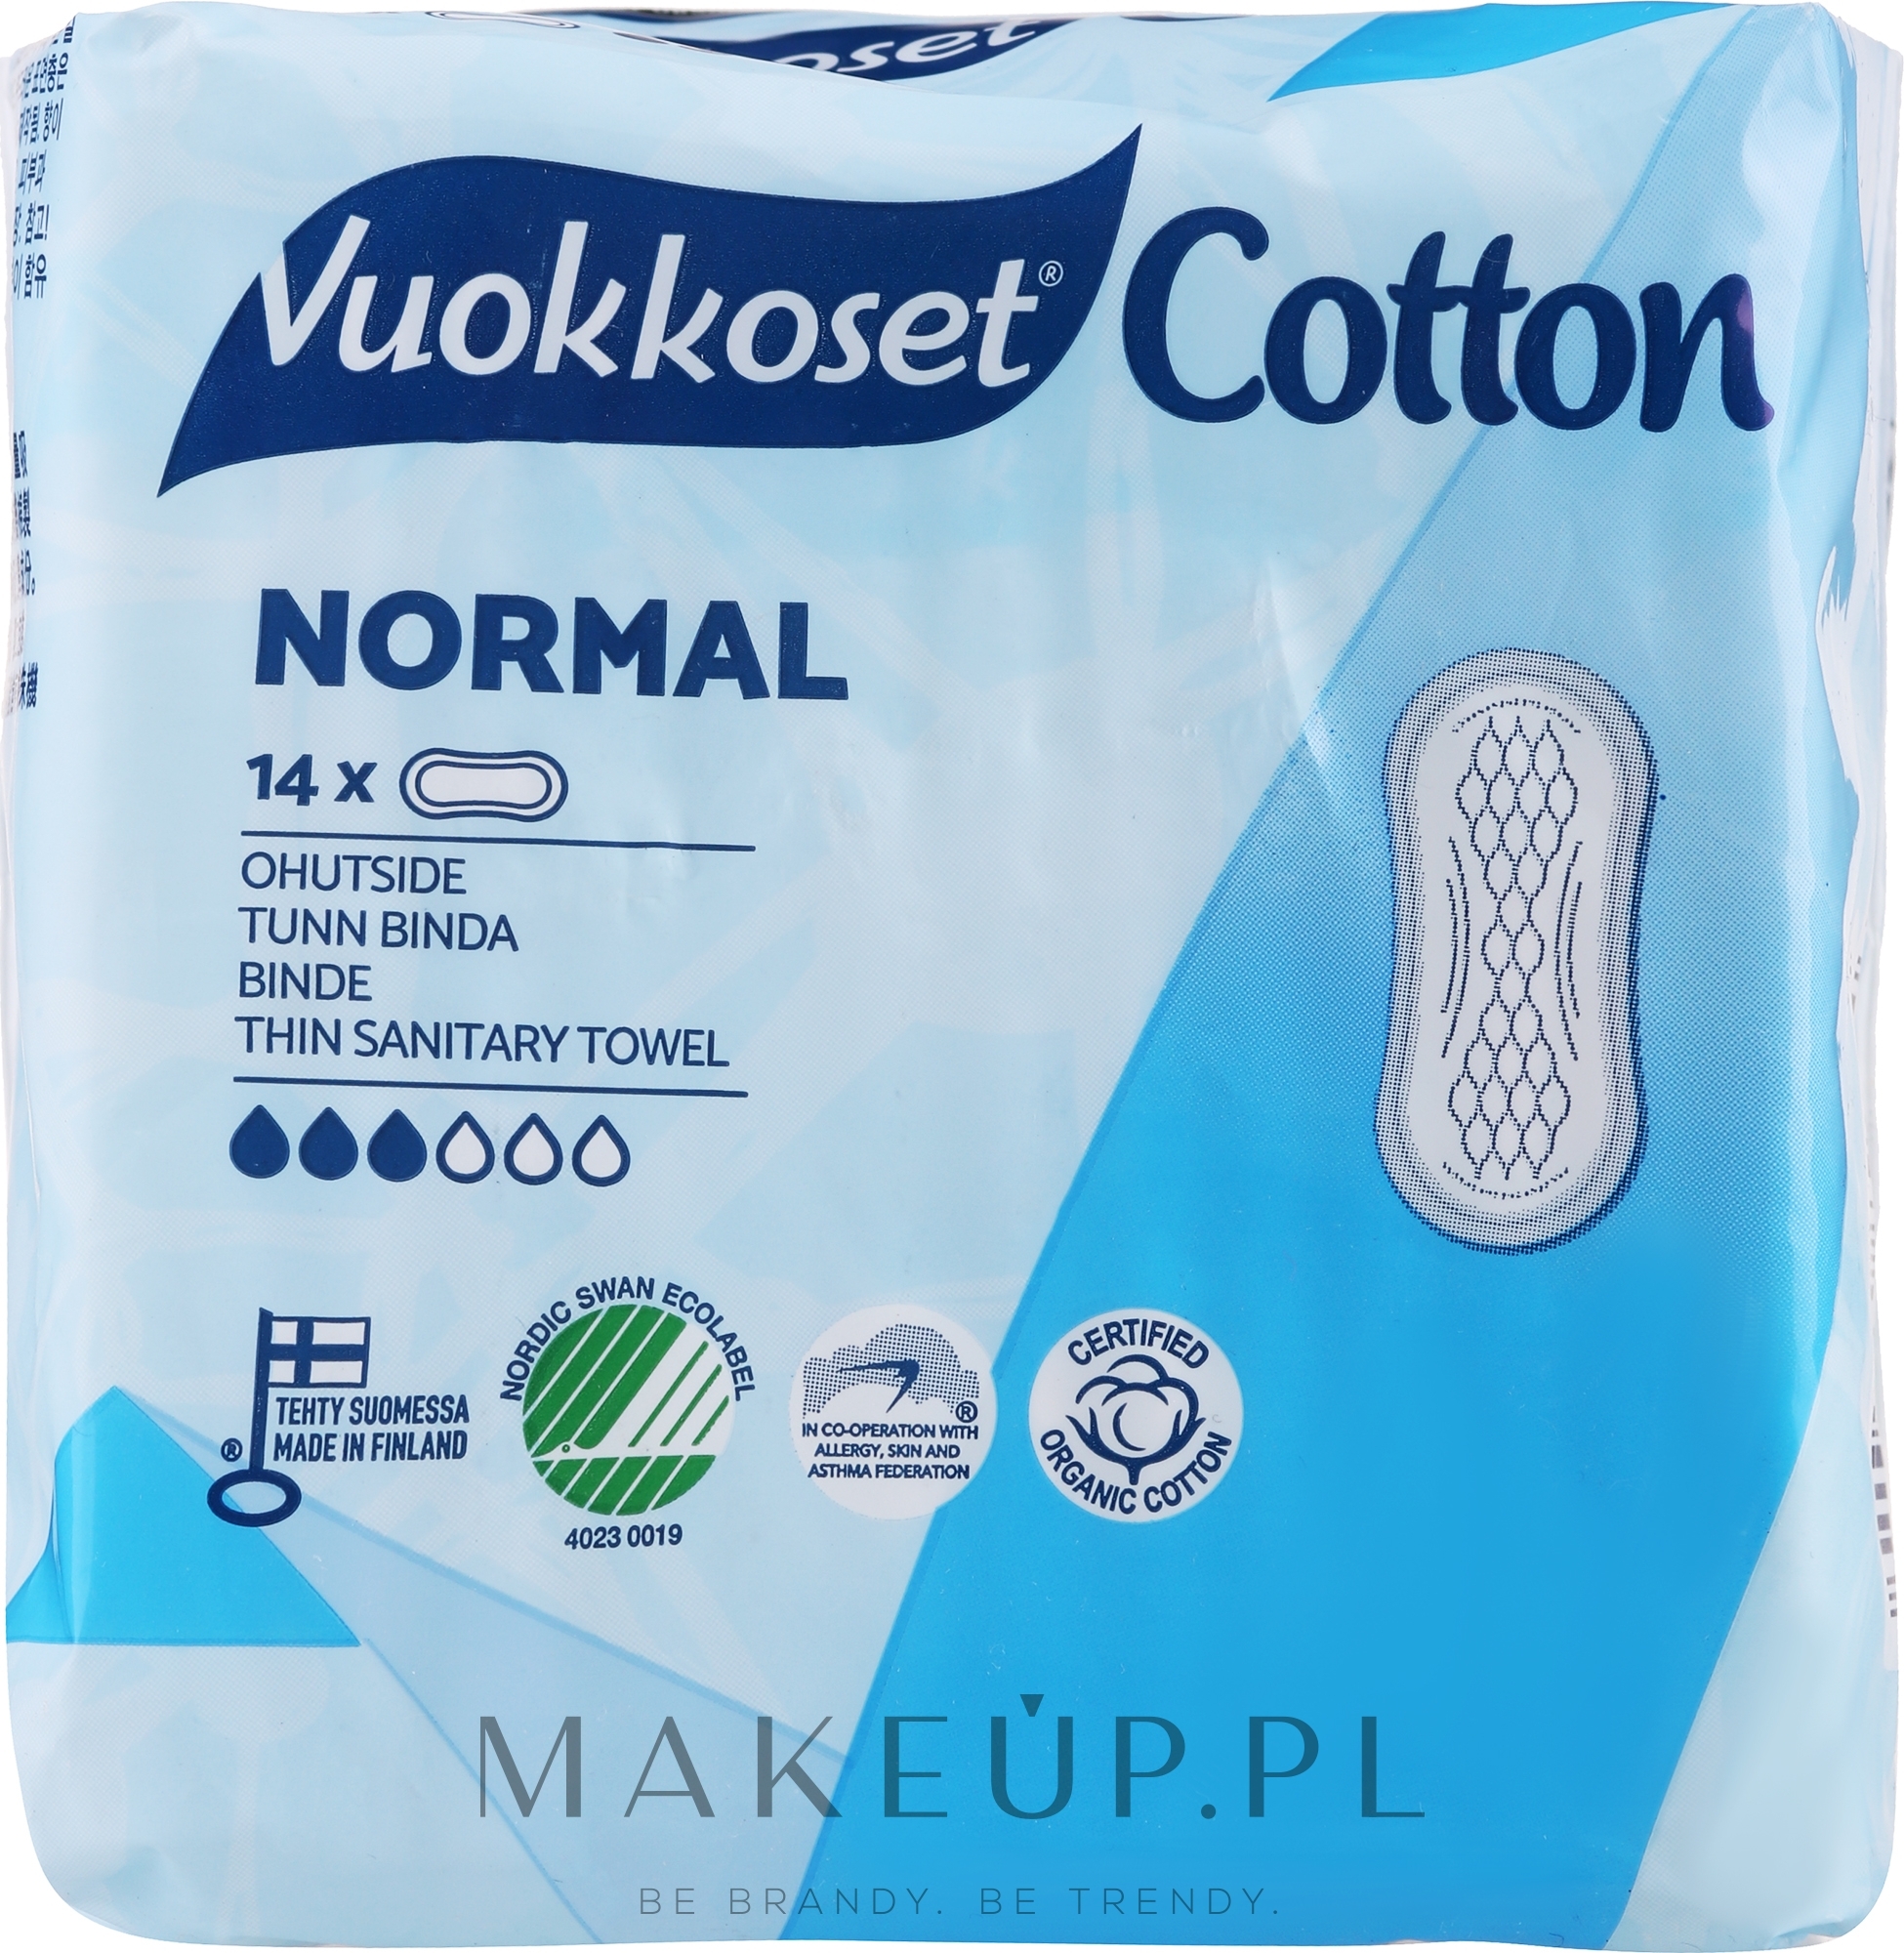 Podpaski bez skrzydełek, 14 szt. - Vuokkoset Cotton Normal Sensitive — Zdjęcie 14 szt.